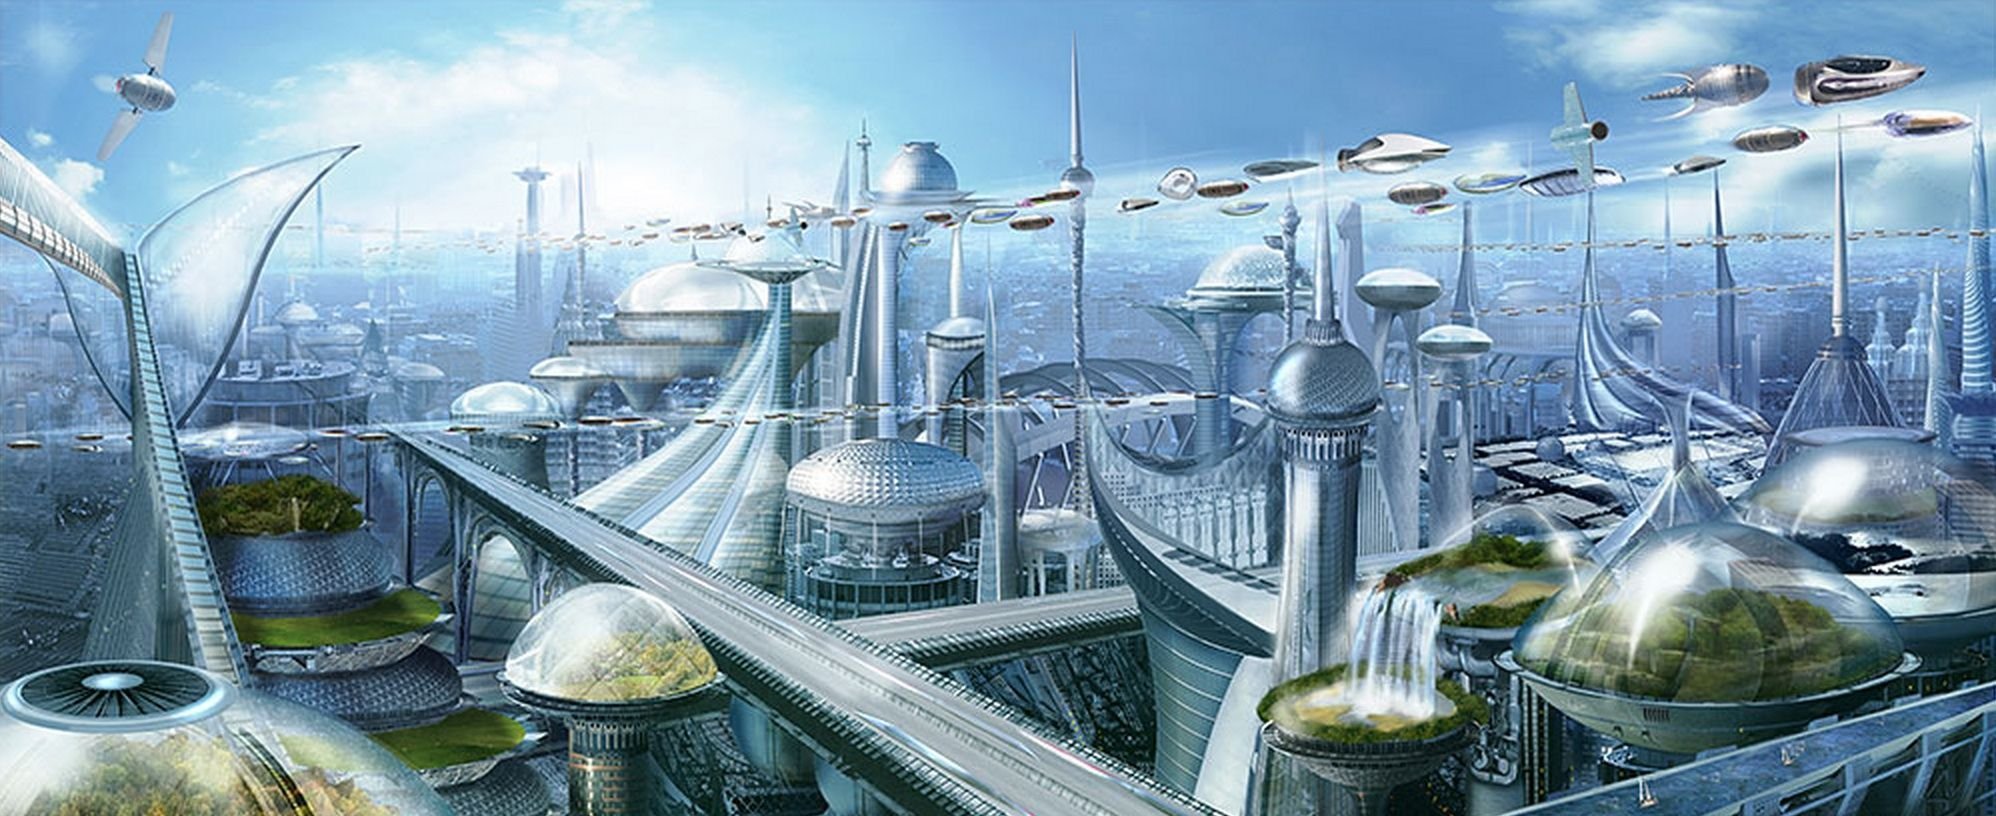 Как изменится мир через 20 лет. Фантастические города будущего. Город в будущем. Фантастический город рисунок. Фантастический мир будущего.